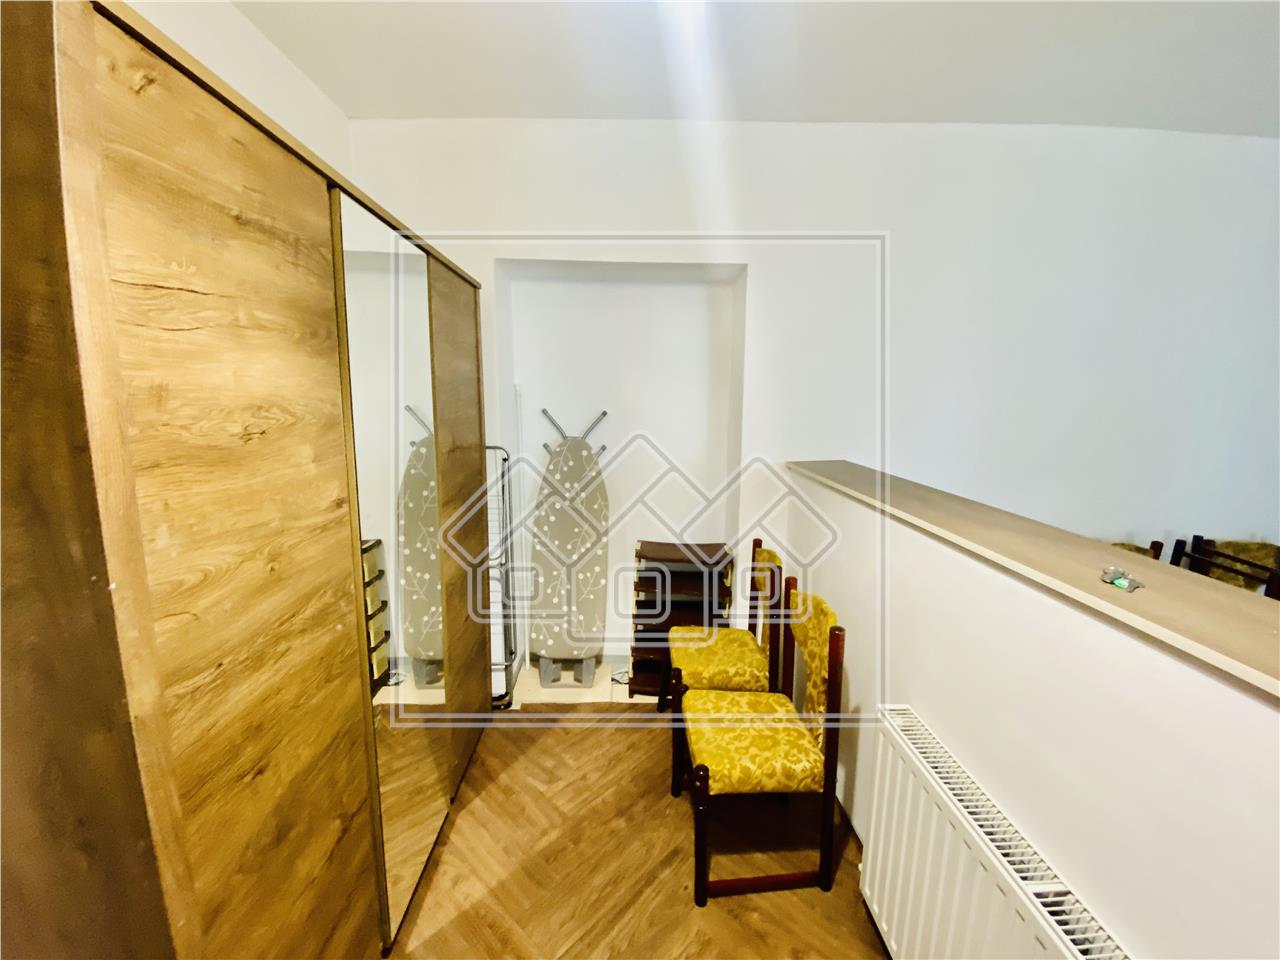 Apartament de vanzare in Sibiu -2 studiouri individuale- Zona Centrala